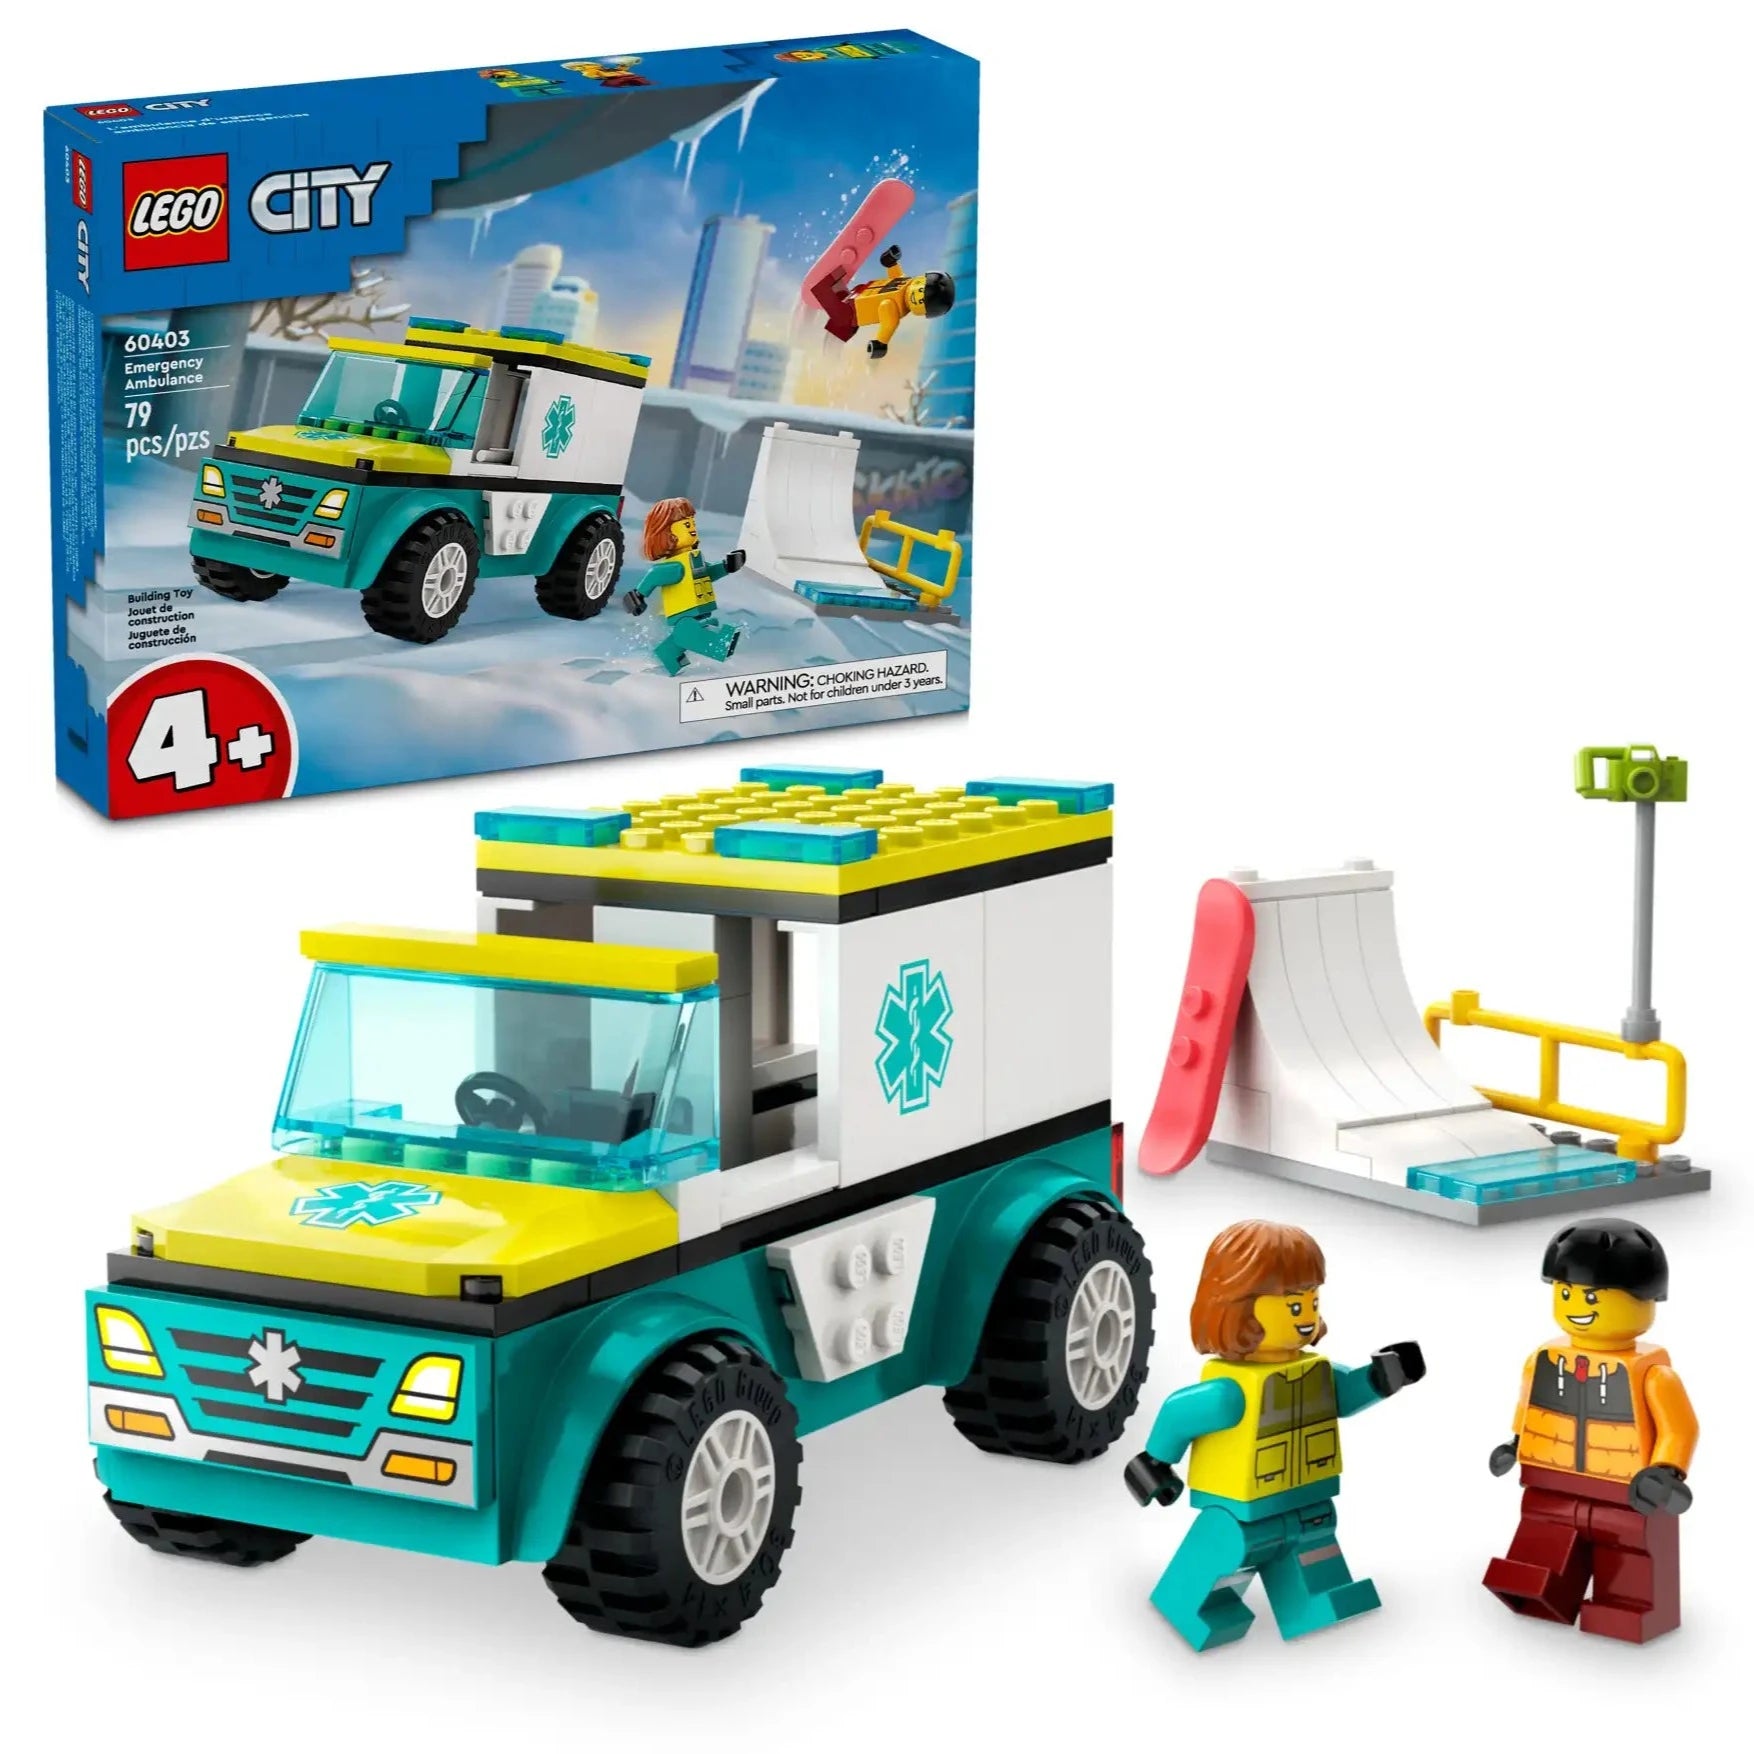 Lego City Emergency Ambulance Snowboarder